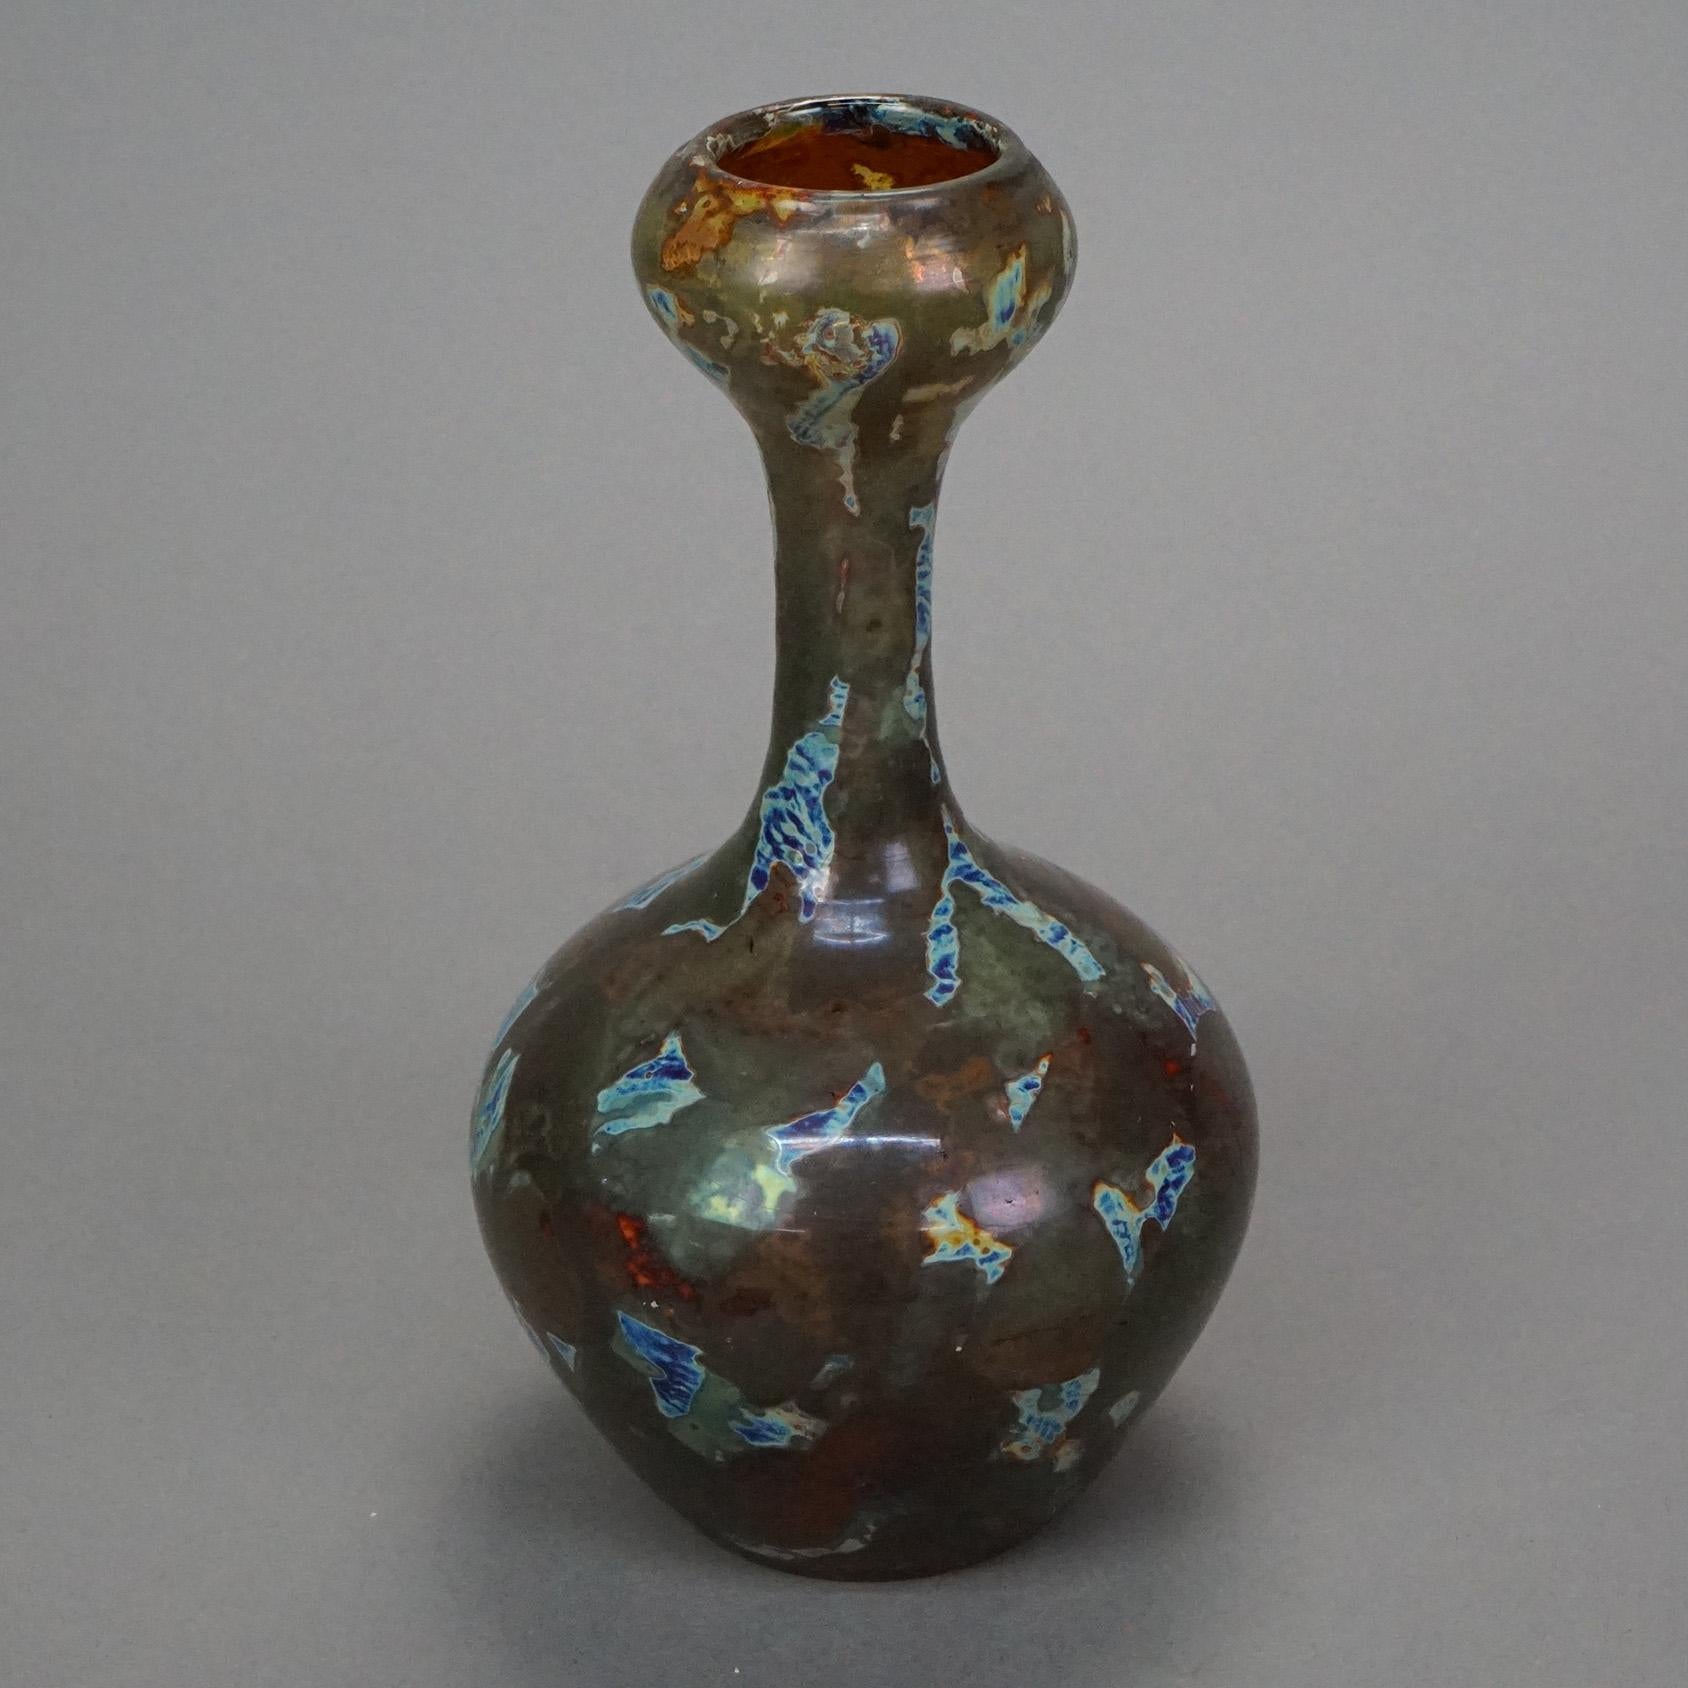 Antique Webb Roman vase offers shard art glass construction in bulbous, c1910

Measures - 8 1/2